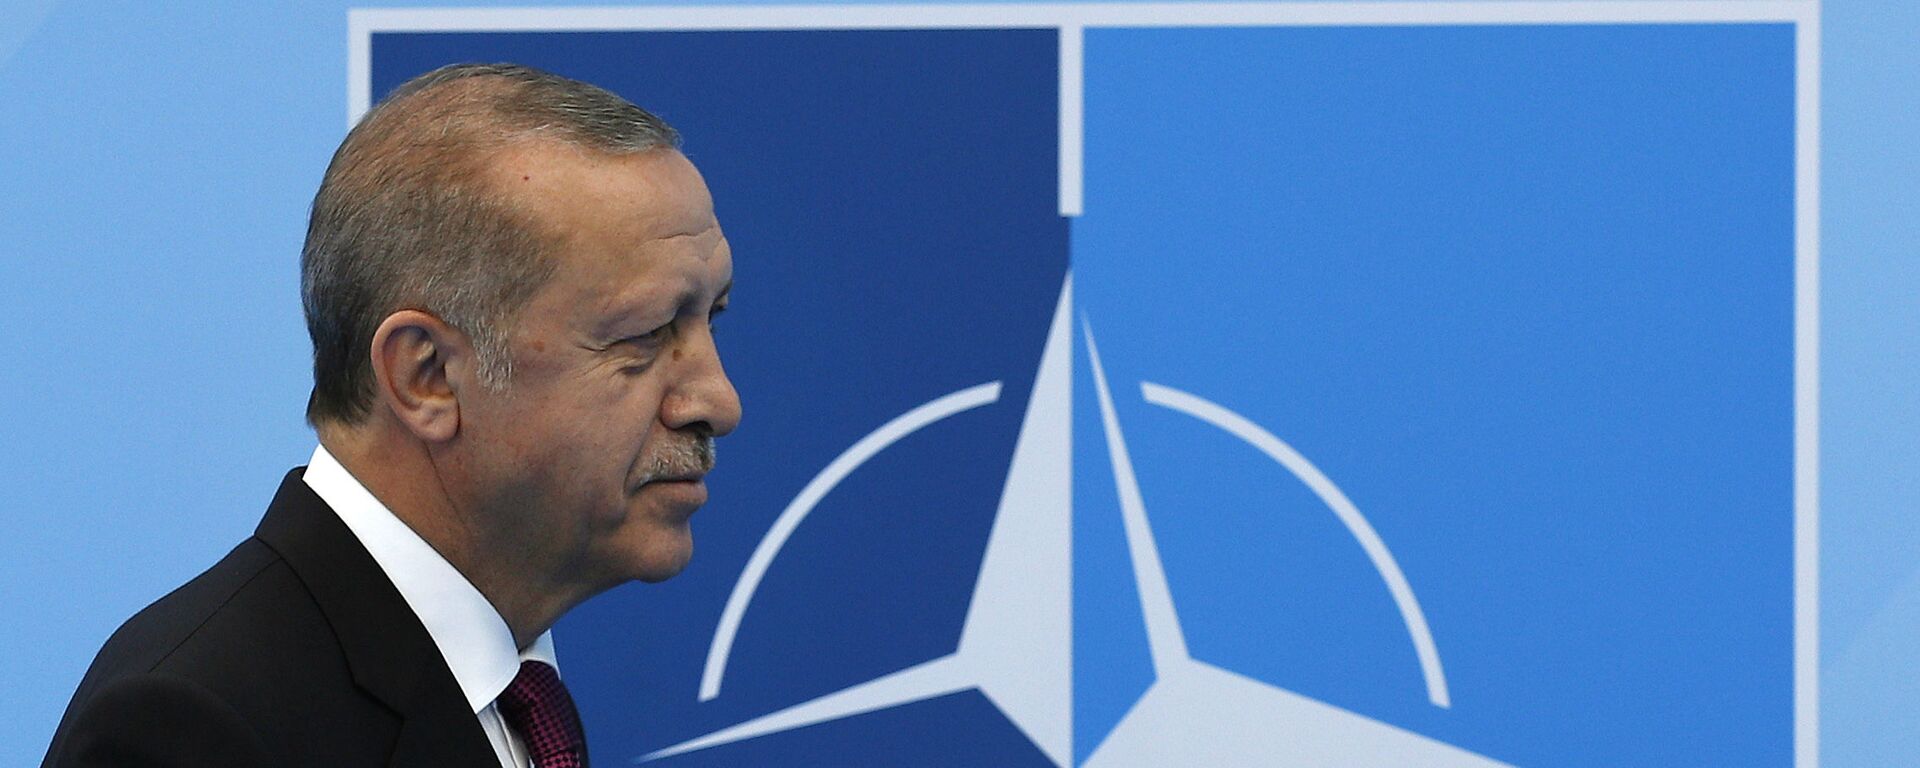 Tổng thống Thổ Nhĩ Kỳ Recep Tayyip Erdogan tại hội nghị thượng đỉnh NATO. - Sputnik Việt Nam, 1920, 17.05.2022